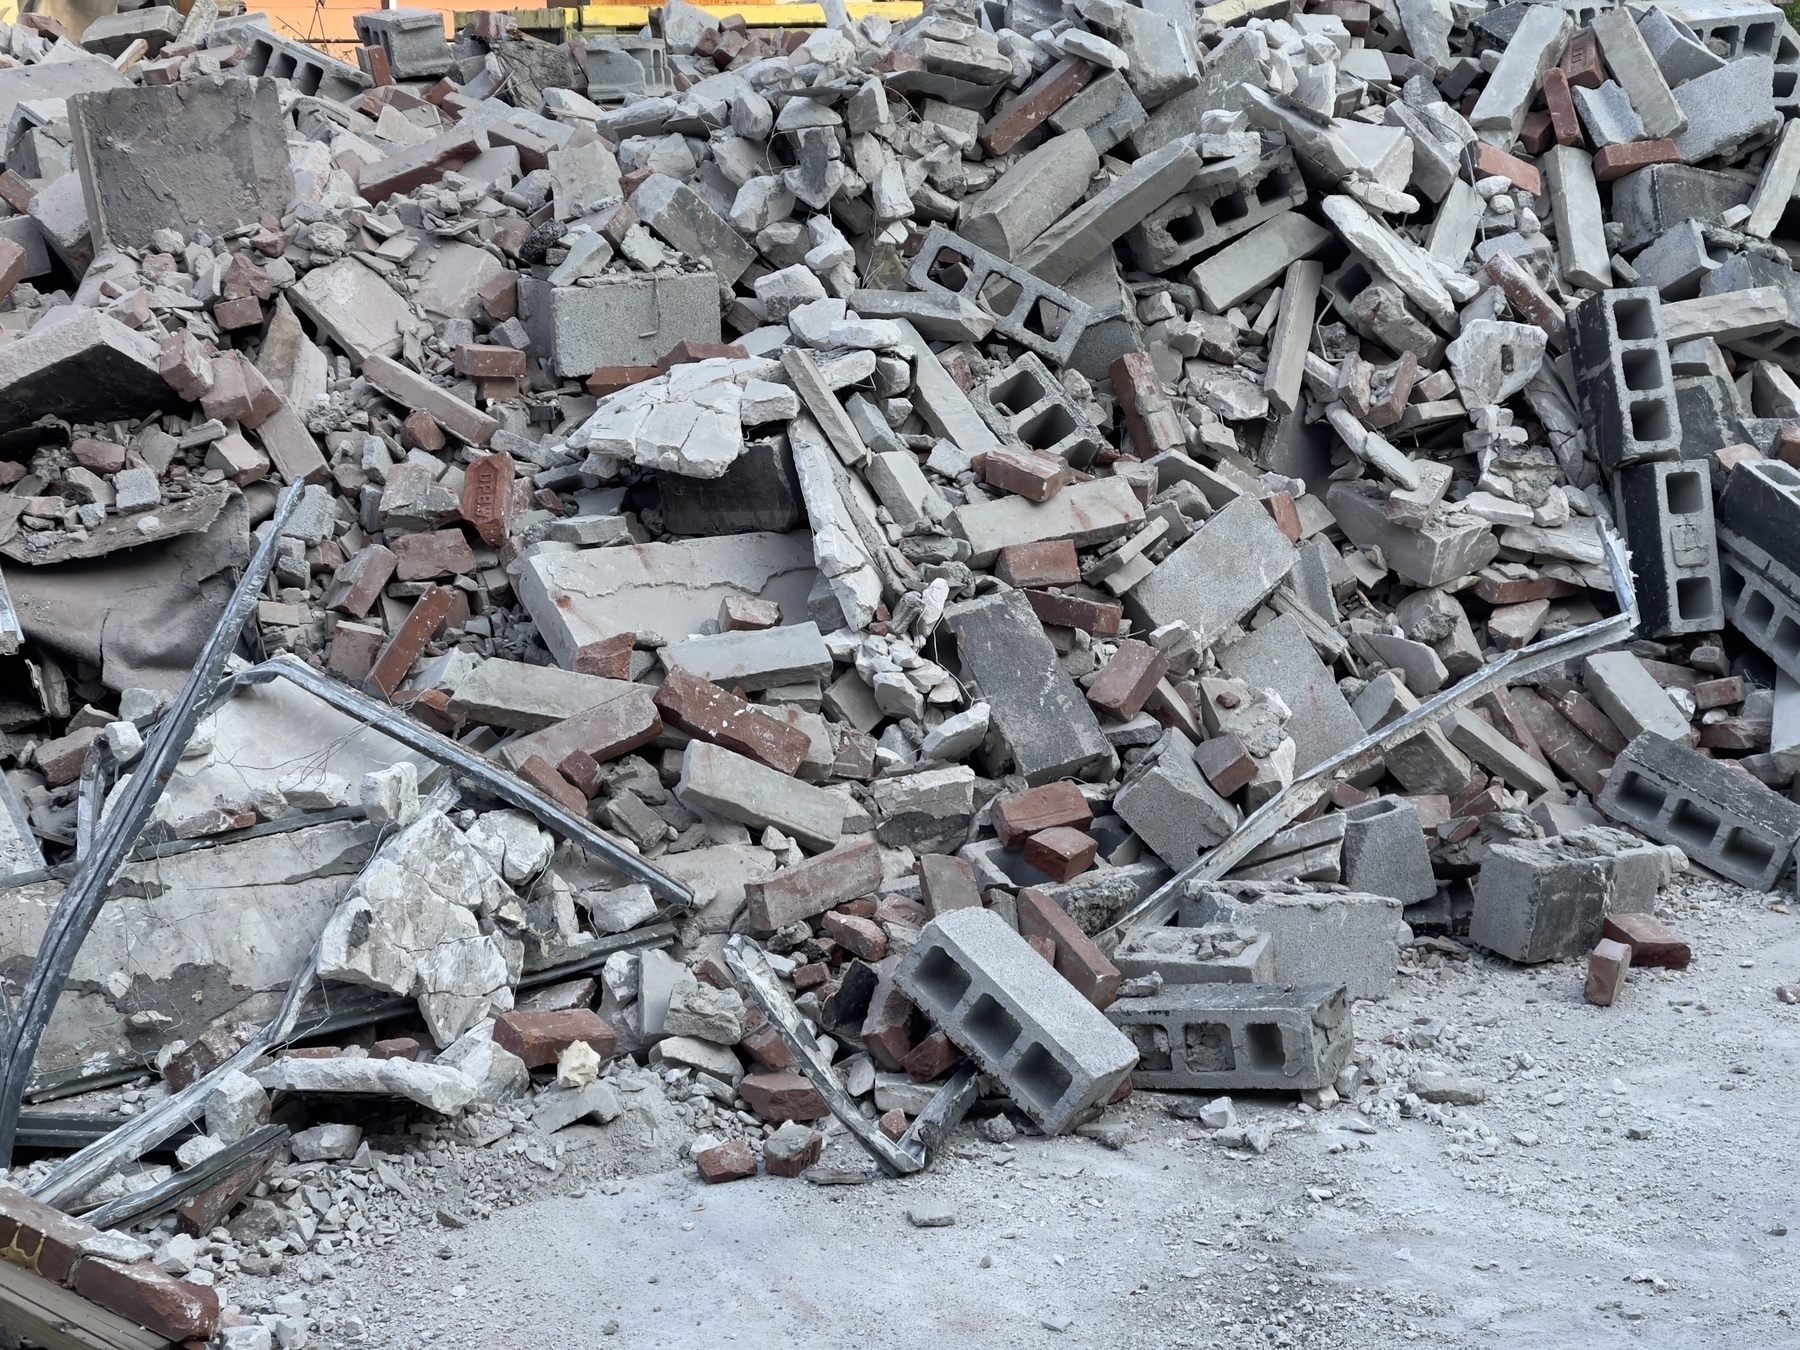 Demolition debris pile, mostly concrete blocks.